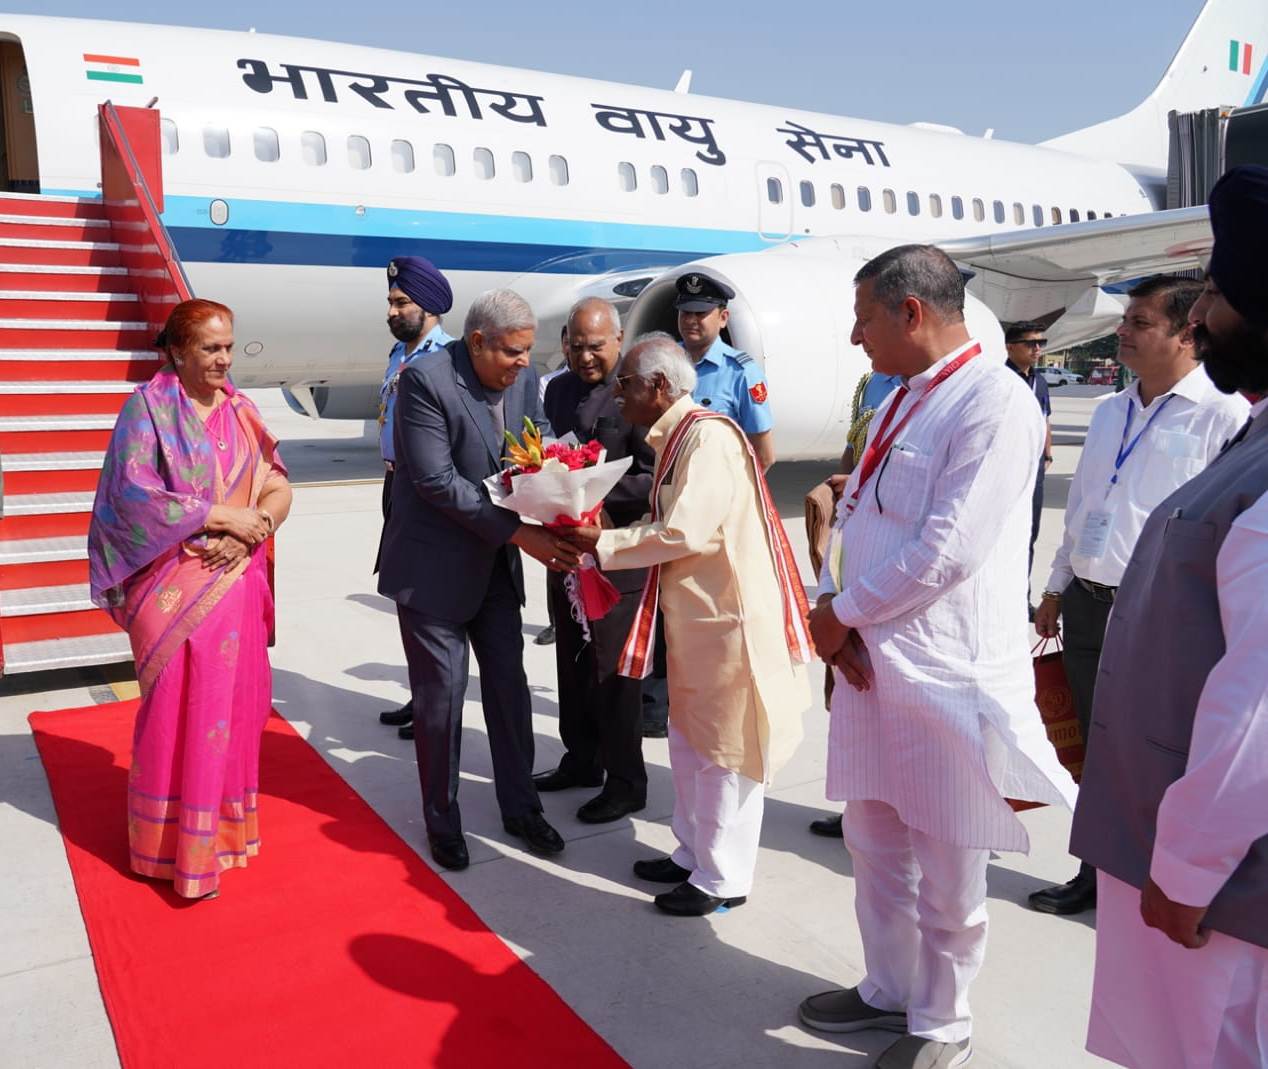 राज्यपाल श्री बंडारू दत्तात्रेय भारत के उप-राष्ट्रपति एवं पंजाब विश्वविद्यालय के कुलाधिपति श्री जगदीप धनखड़ व उनकी धर्मपत्नी श्रीमति सुदेश धनखड़ का चण्डीगढ़ हवाई अड्डे पर पधारने पर उनका स्वागत करते हुए